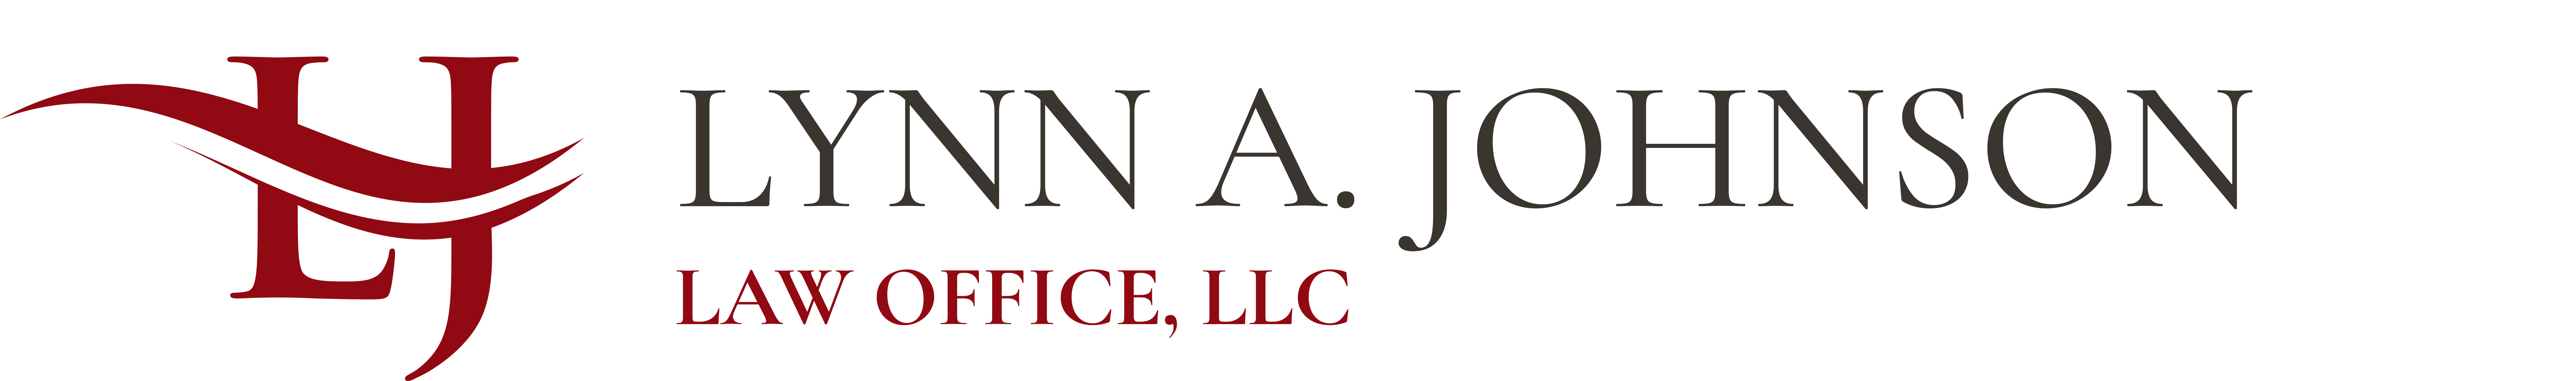 Lynn A. Johnson Law Office, LLC